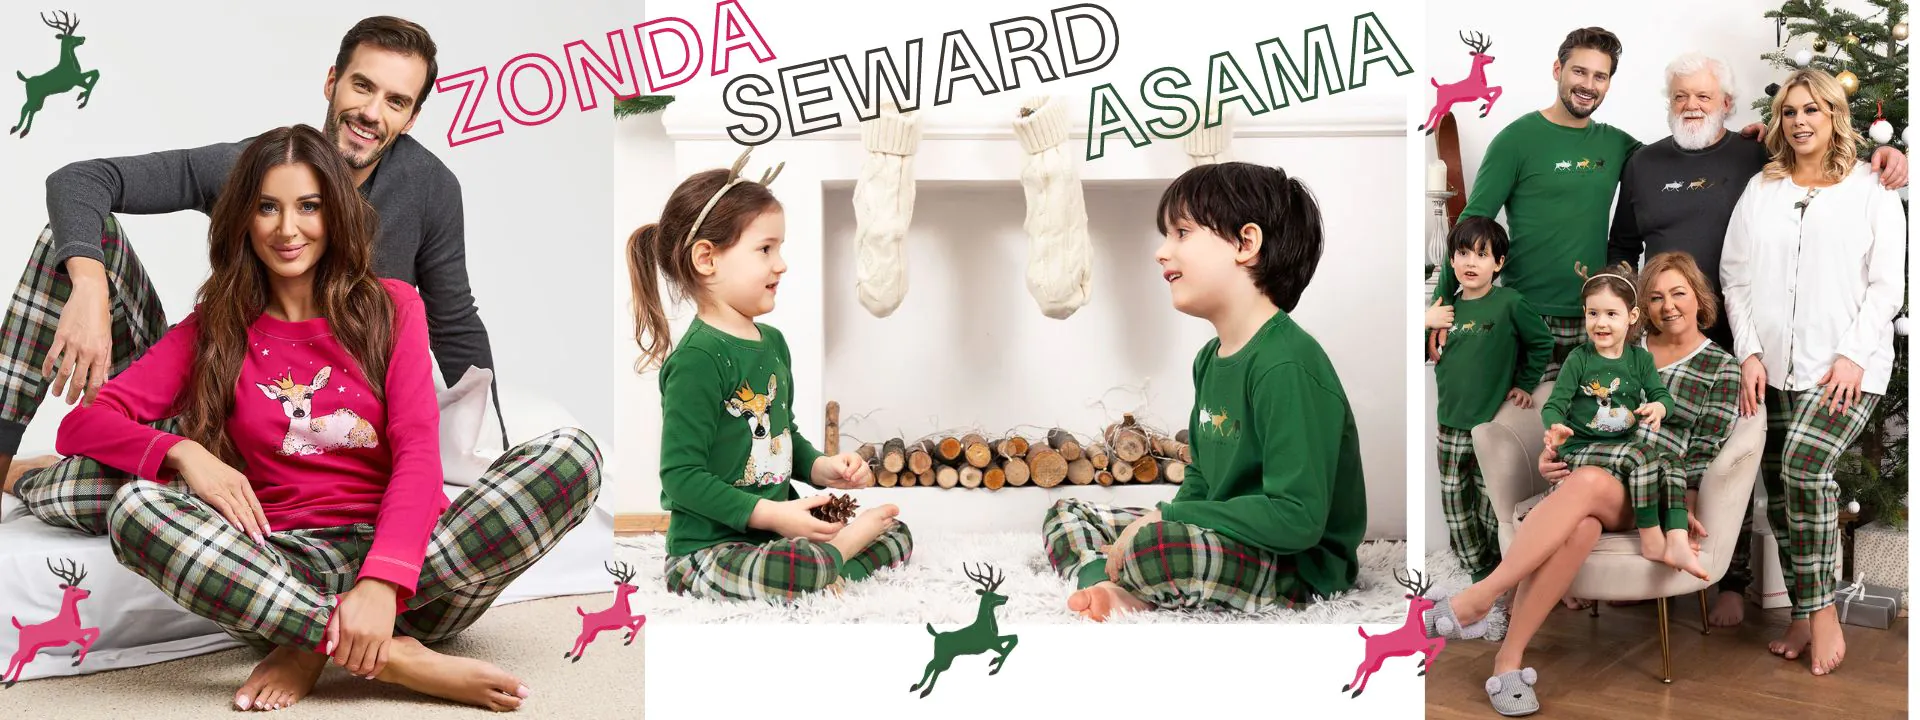 Italian Fashion piżamy w kratę dla całej rodziny Asama Zonda Seward